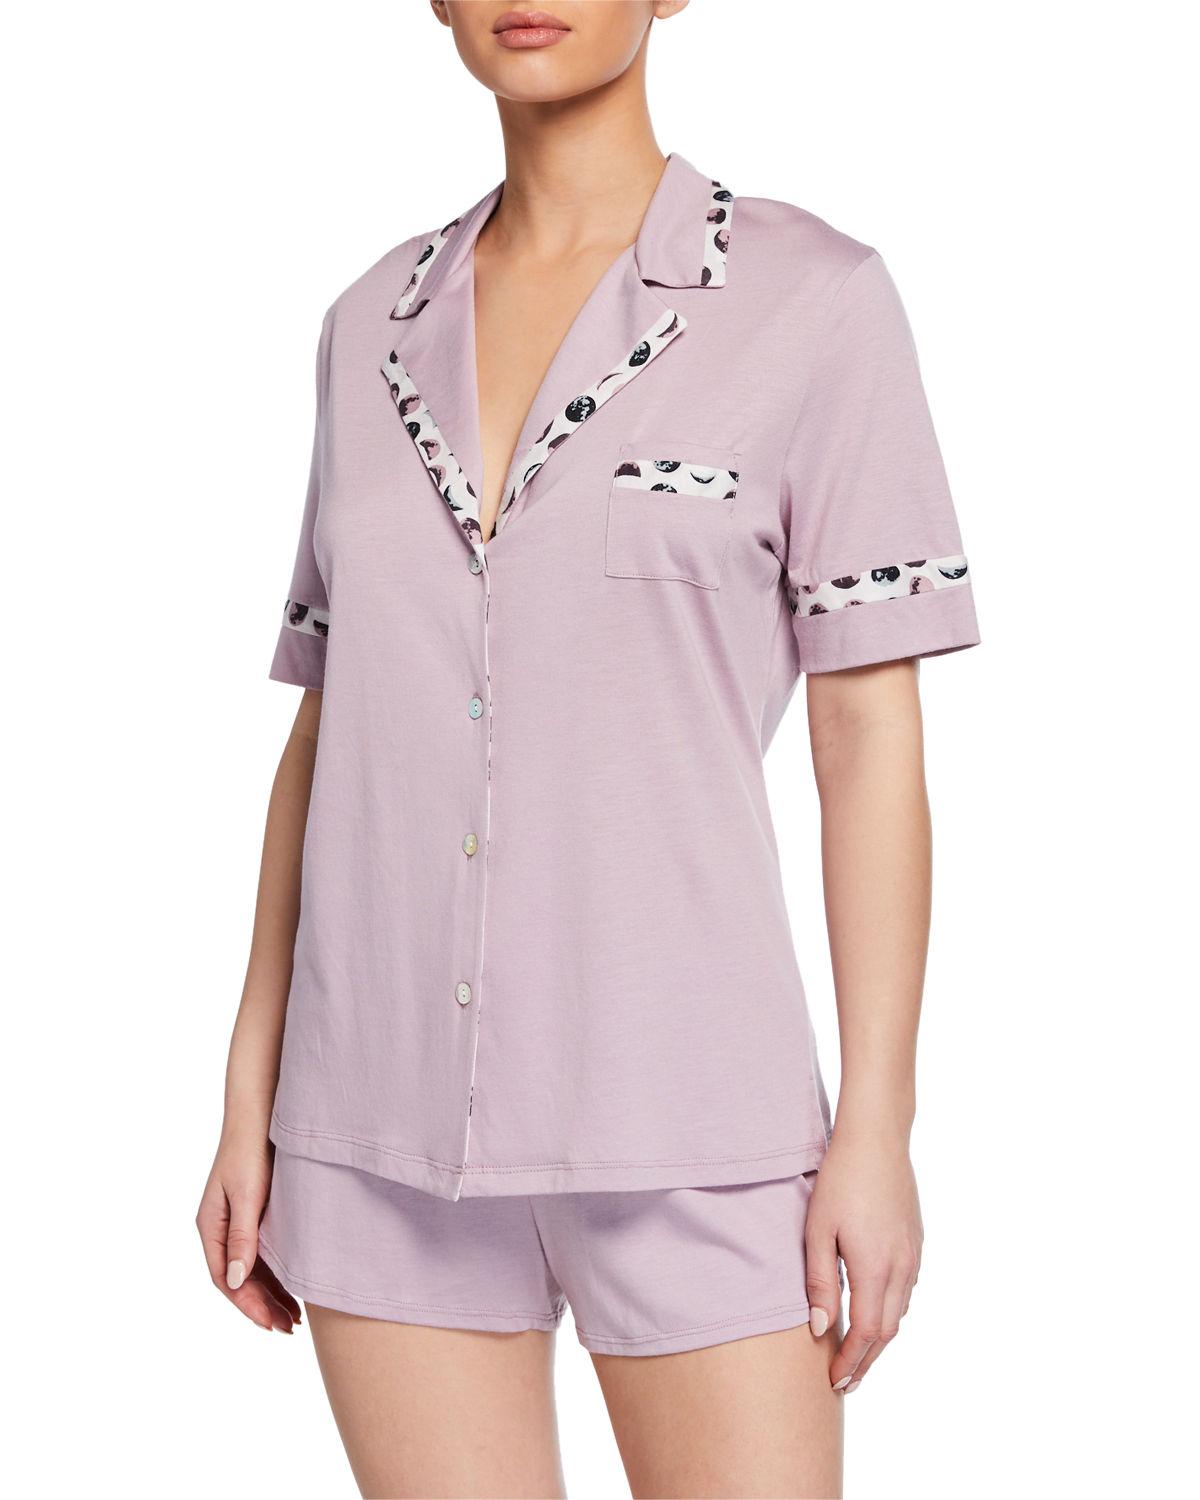 Cosabella Bella Solid Shortie Pajama Set in Pink - Lyst